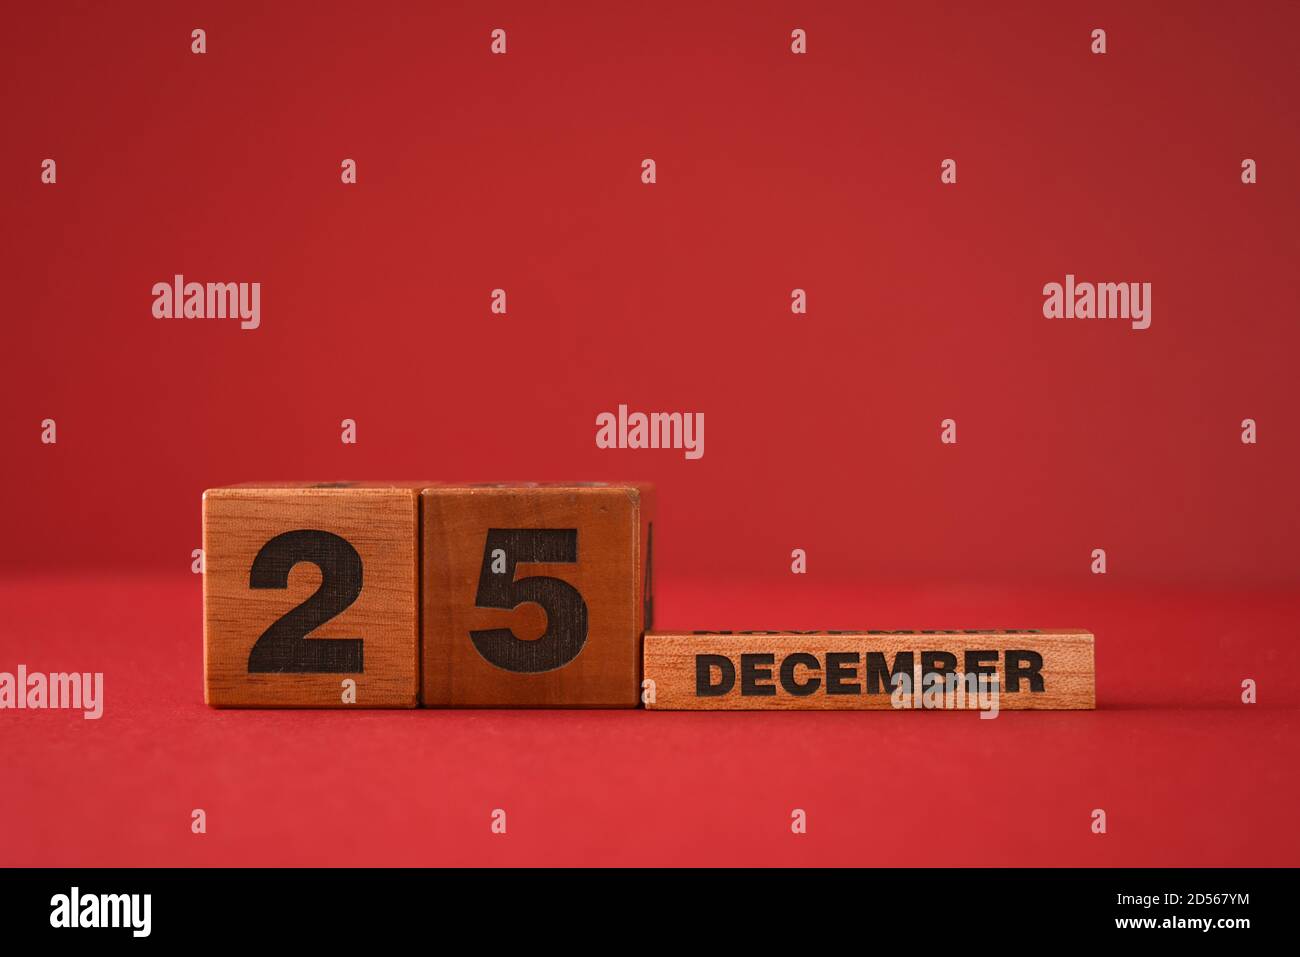 Am 25. Dezember in Holzblöcken auf rotem Hintergrund Stockfoto